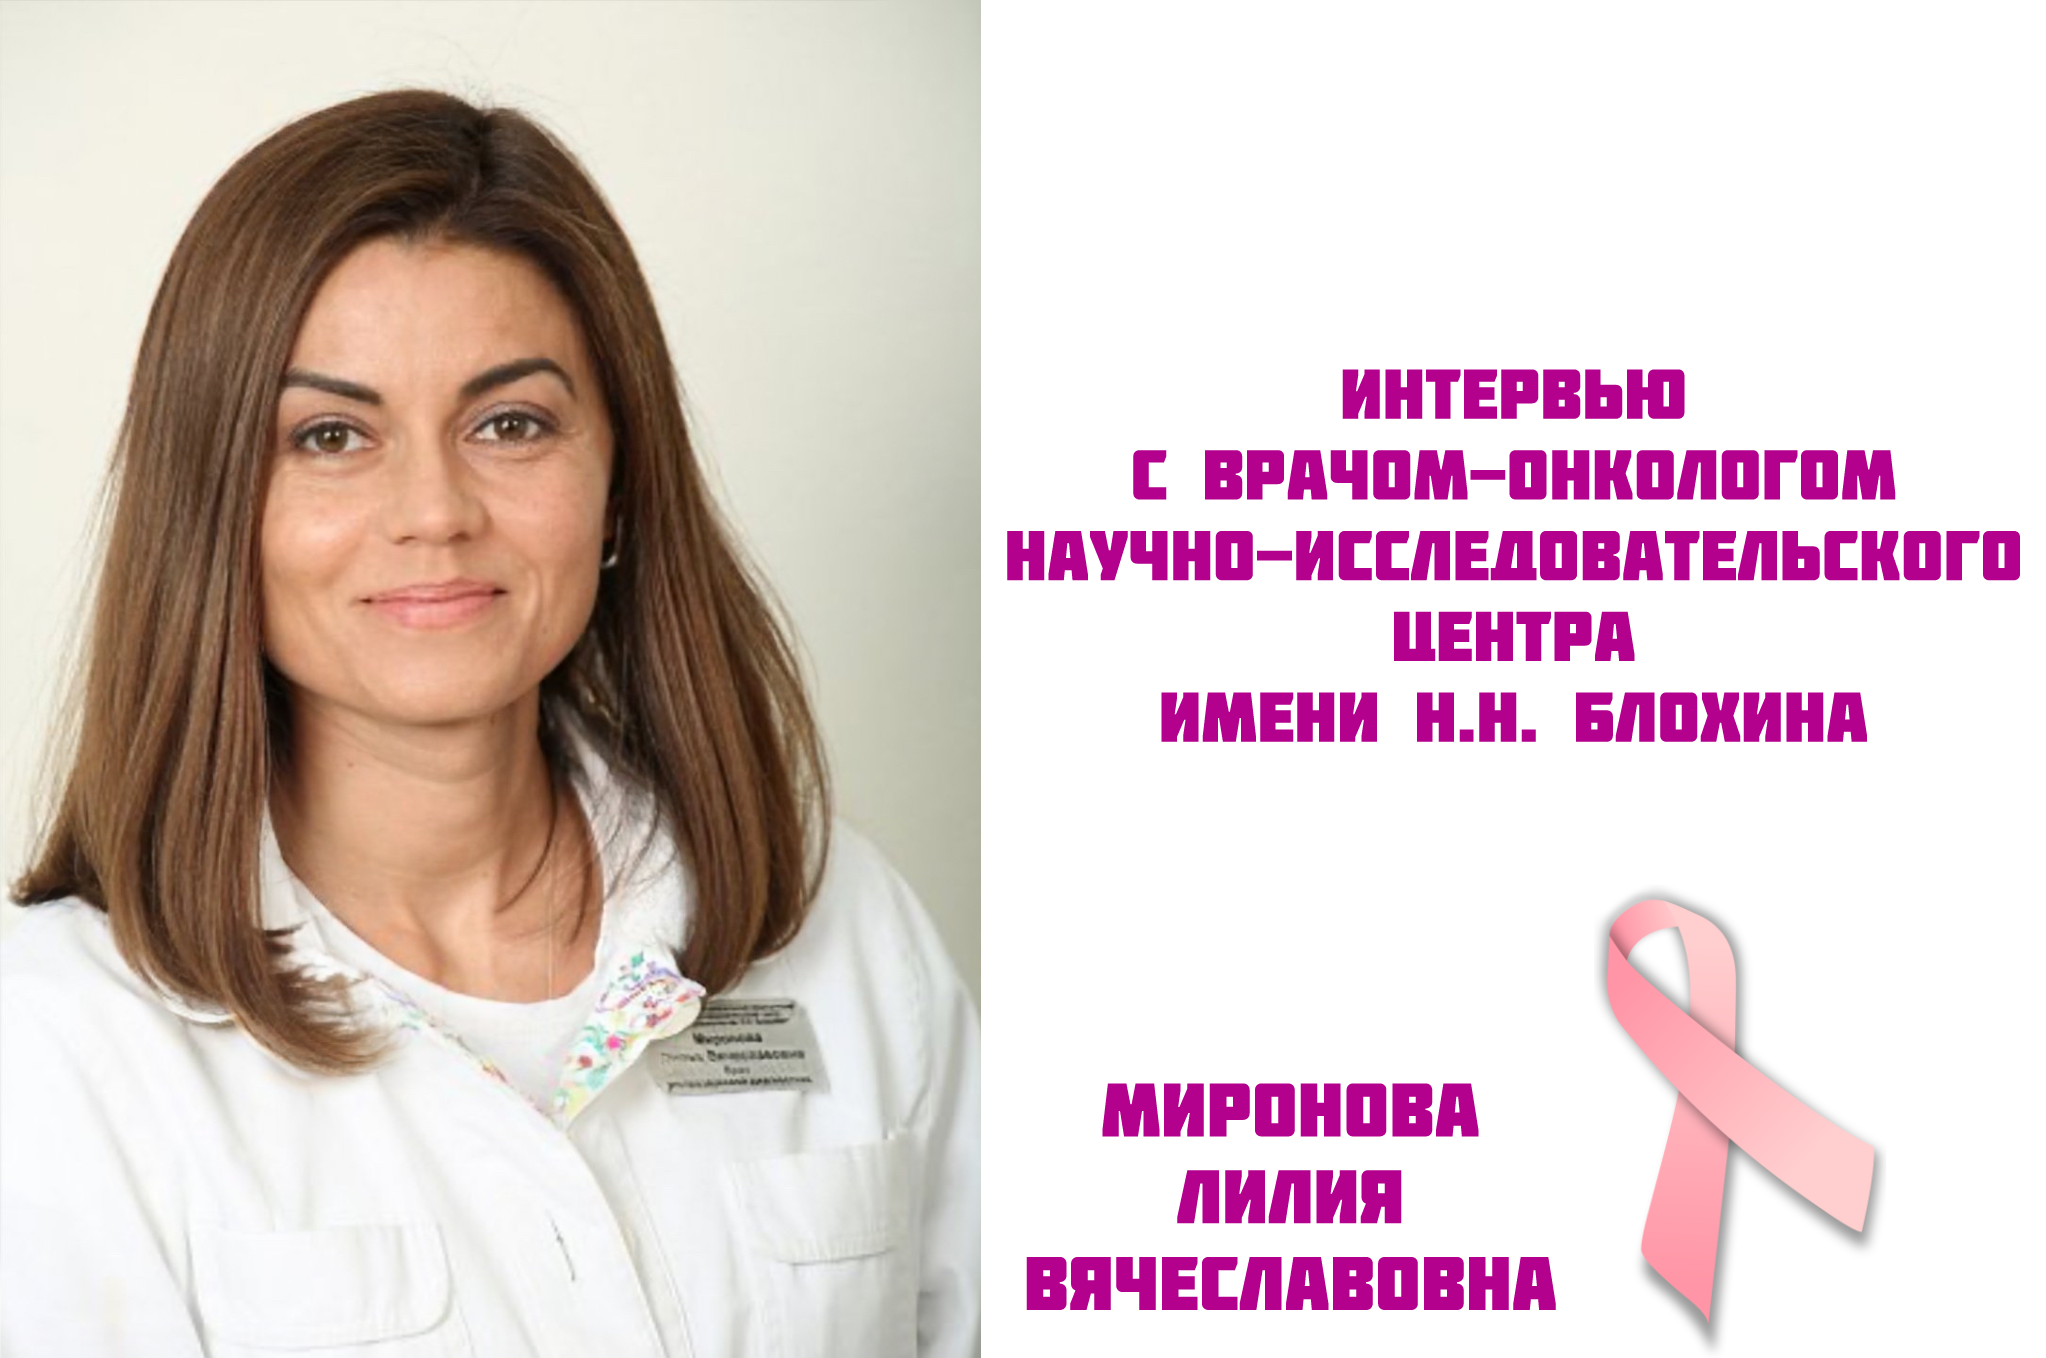 Миронова Лилия Вячеславовна | Интервью с врачом-онкологом научно-исследовательского центра